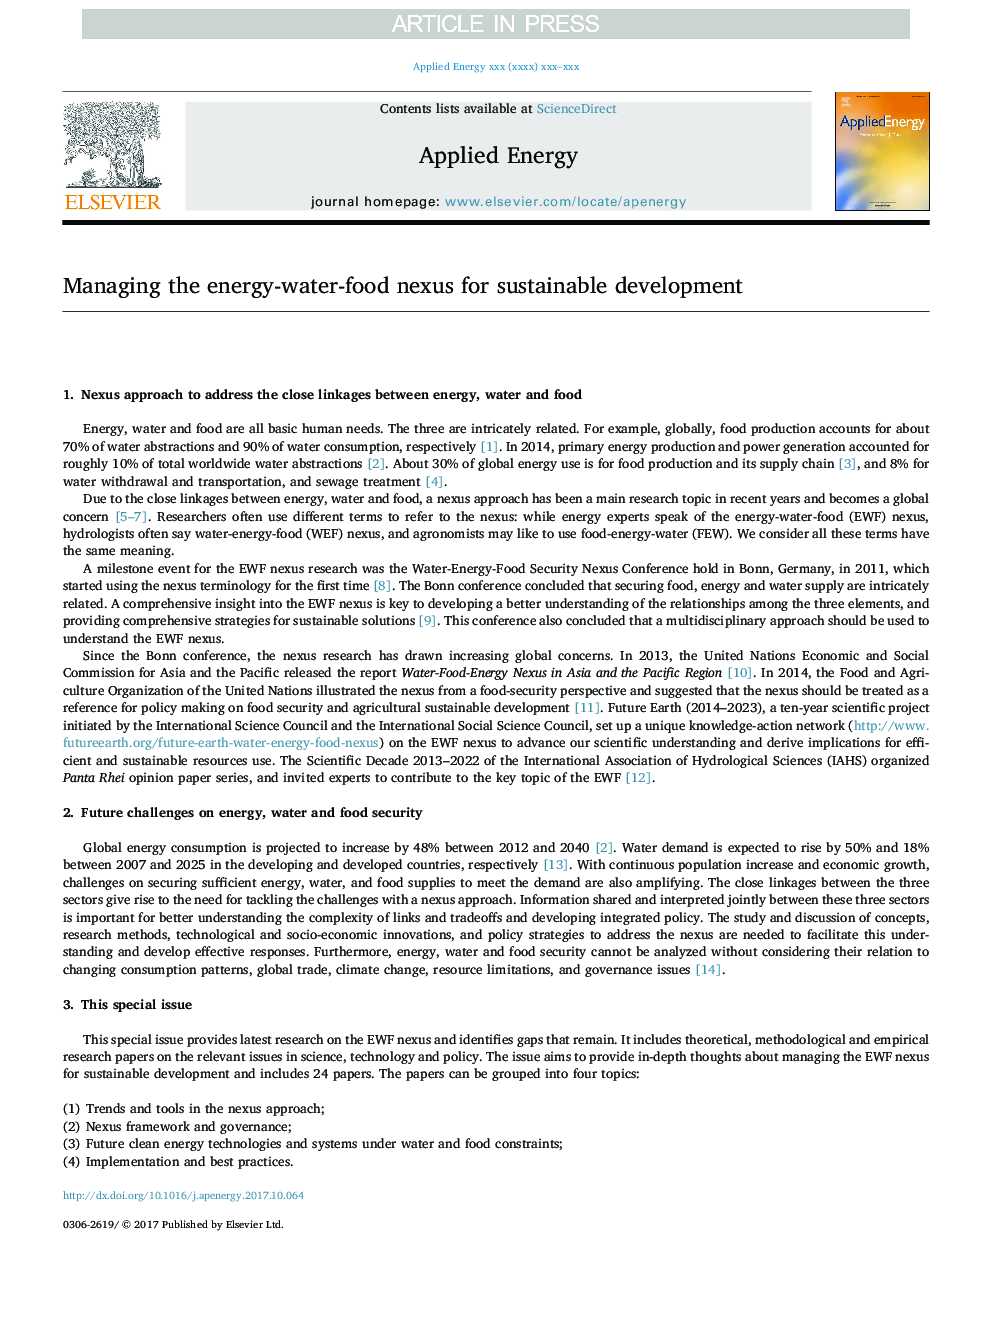 مدیریت ارتباطات انرژی-آب-غذا برای توسعه پایدار 